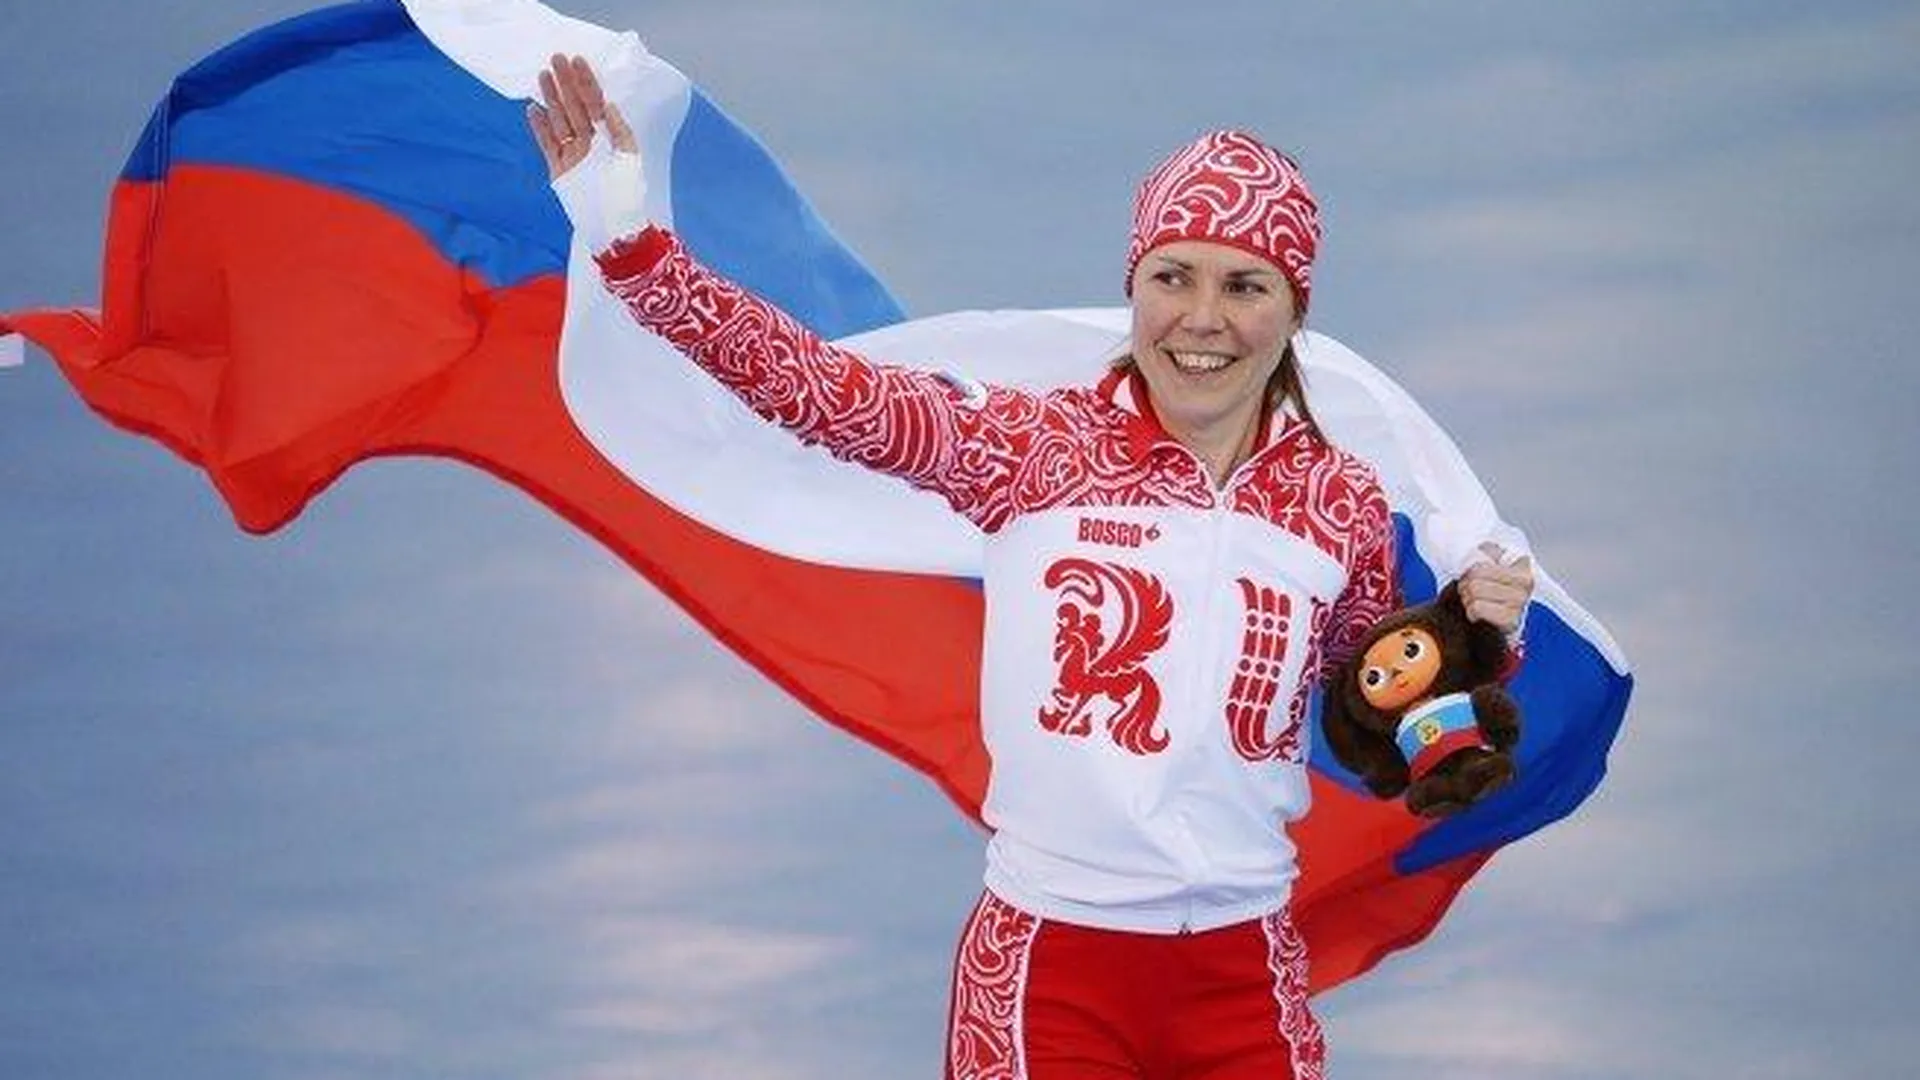 Двукратный призер Олимпийских игр в конькобежном спорте родила первенца в Подмосковье